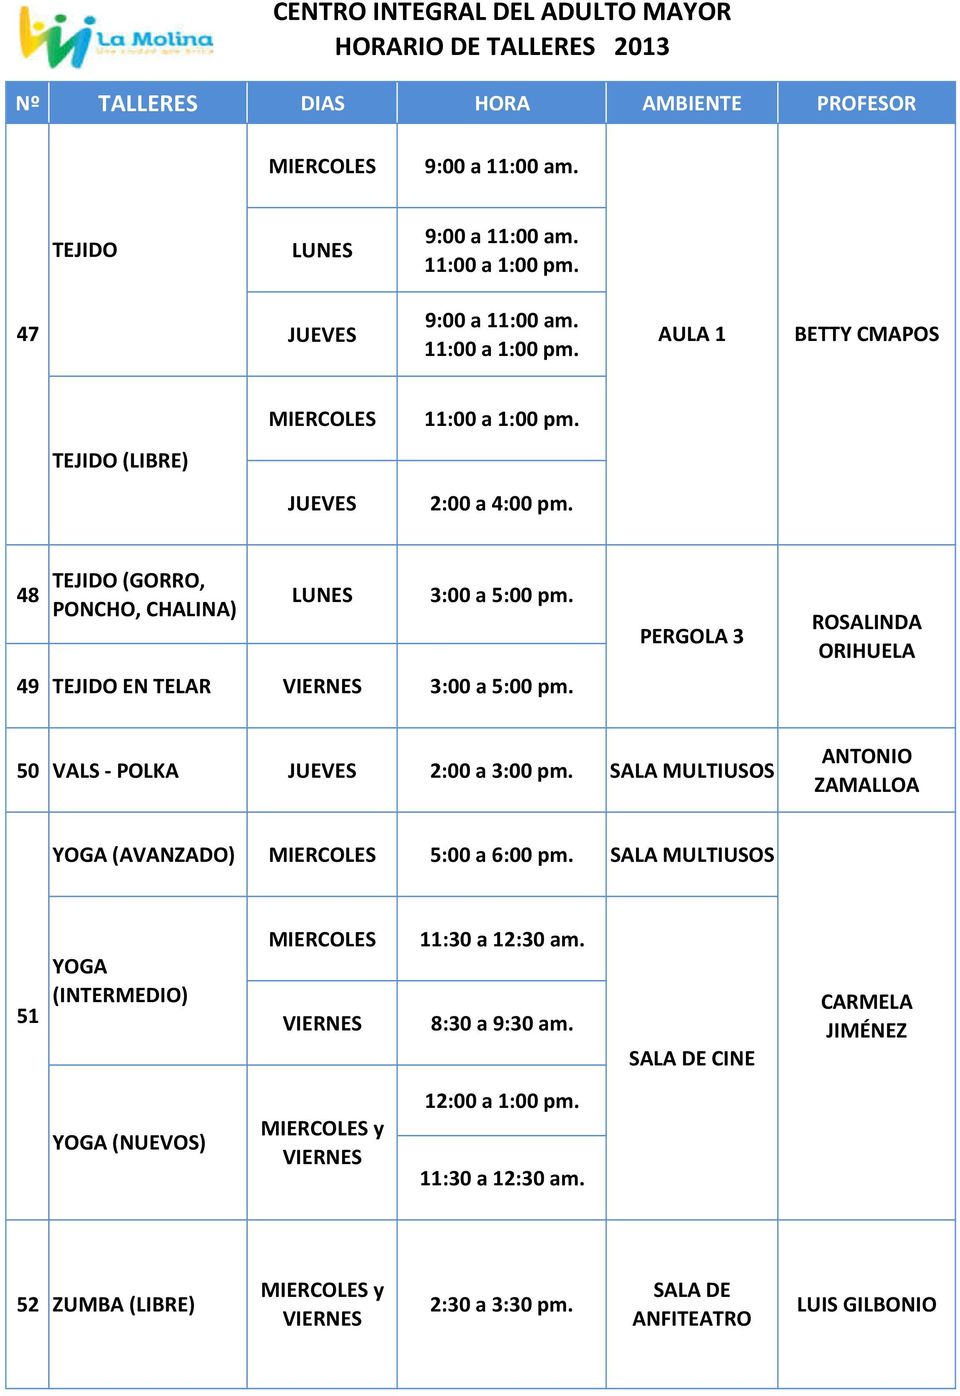 PERGOLA 3 ROSALINDA ORIHUELA 50 VALS - POLKA 2:00 a 3:00 pm.